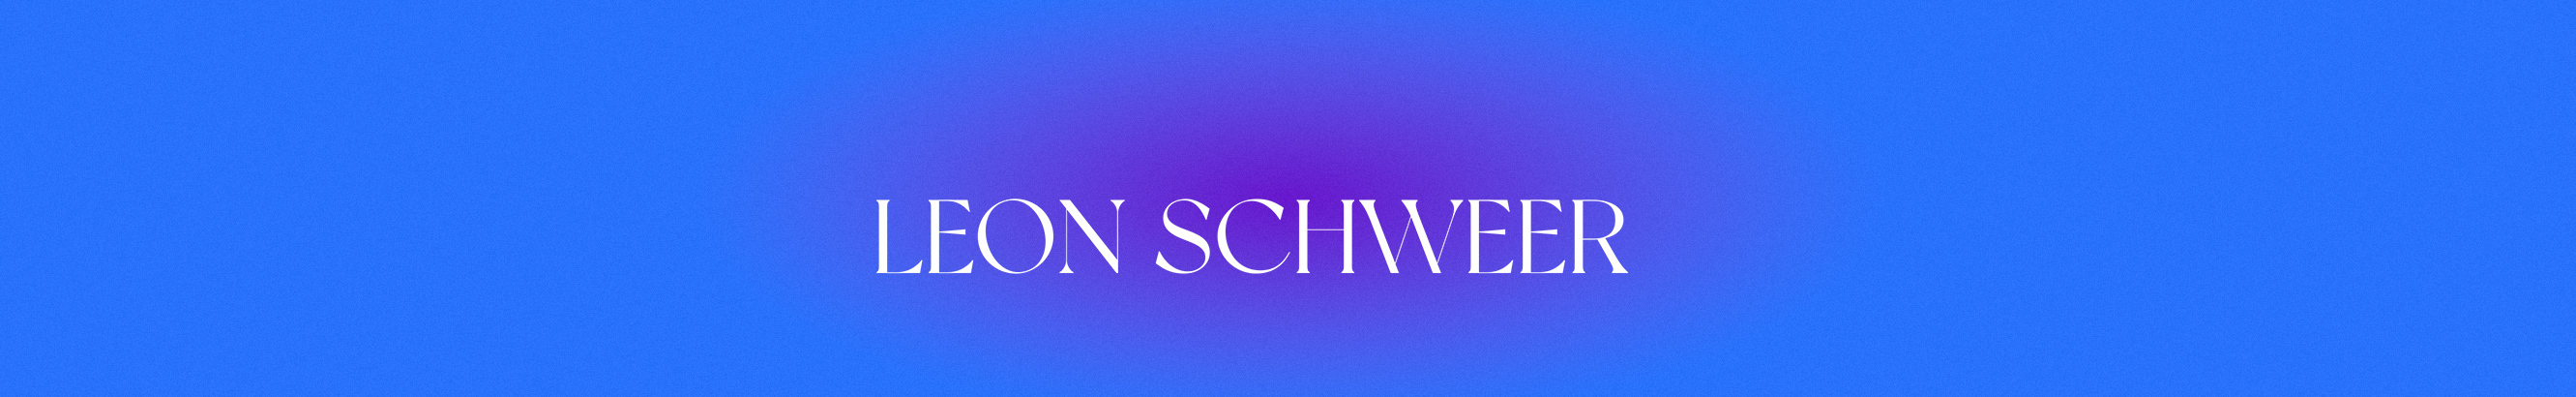 Leon Schweer's profile banner